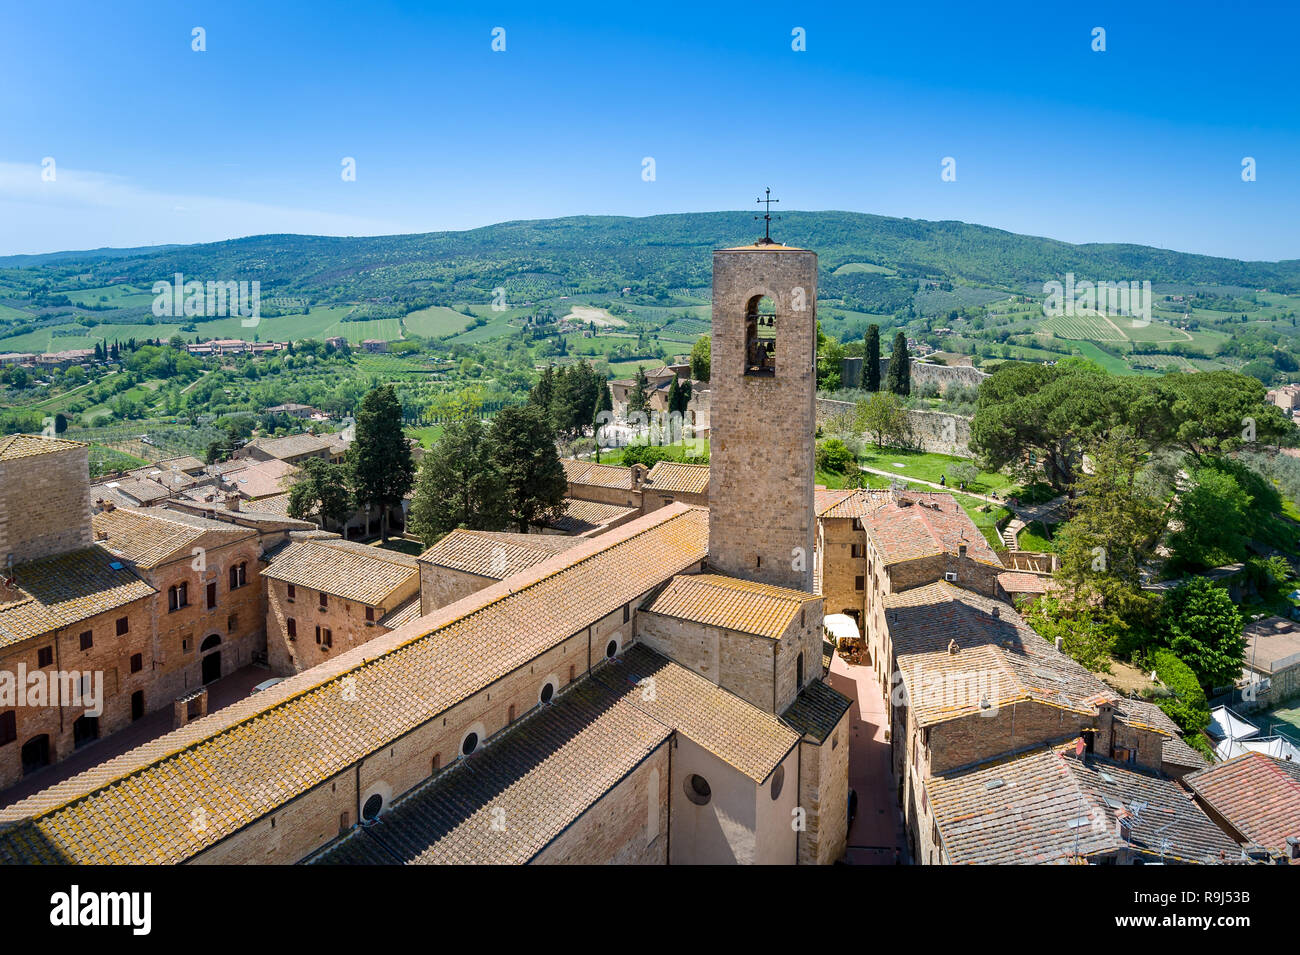 Vista panoramica di San Gimignano da una delle torri. Toscana, Italia. Foto Stock